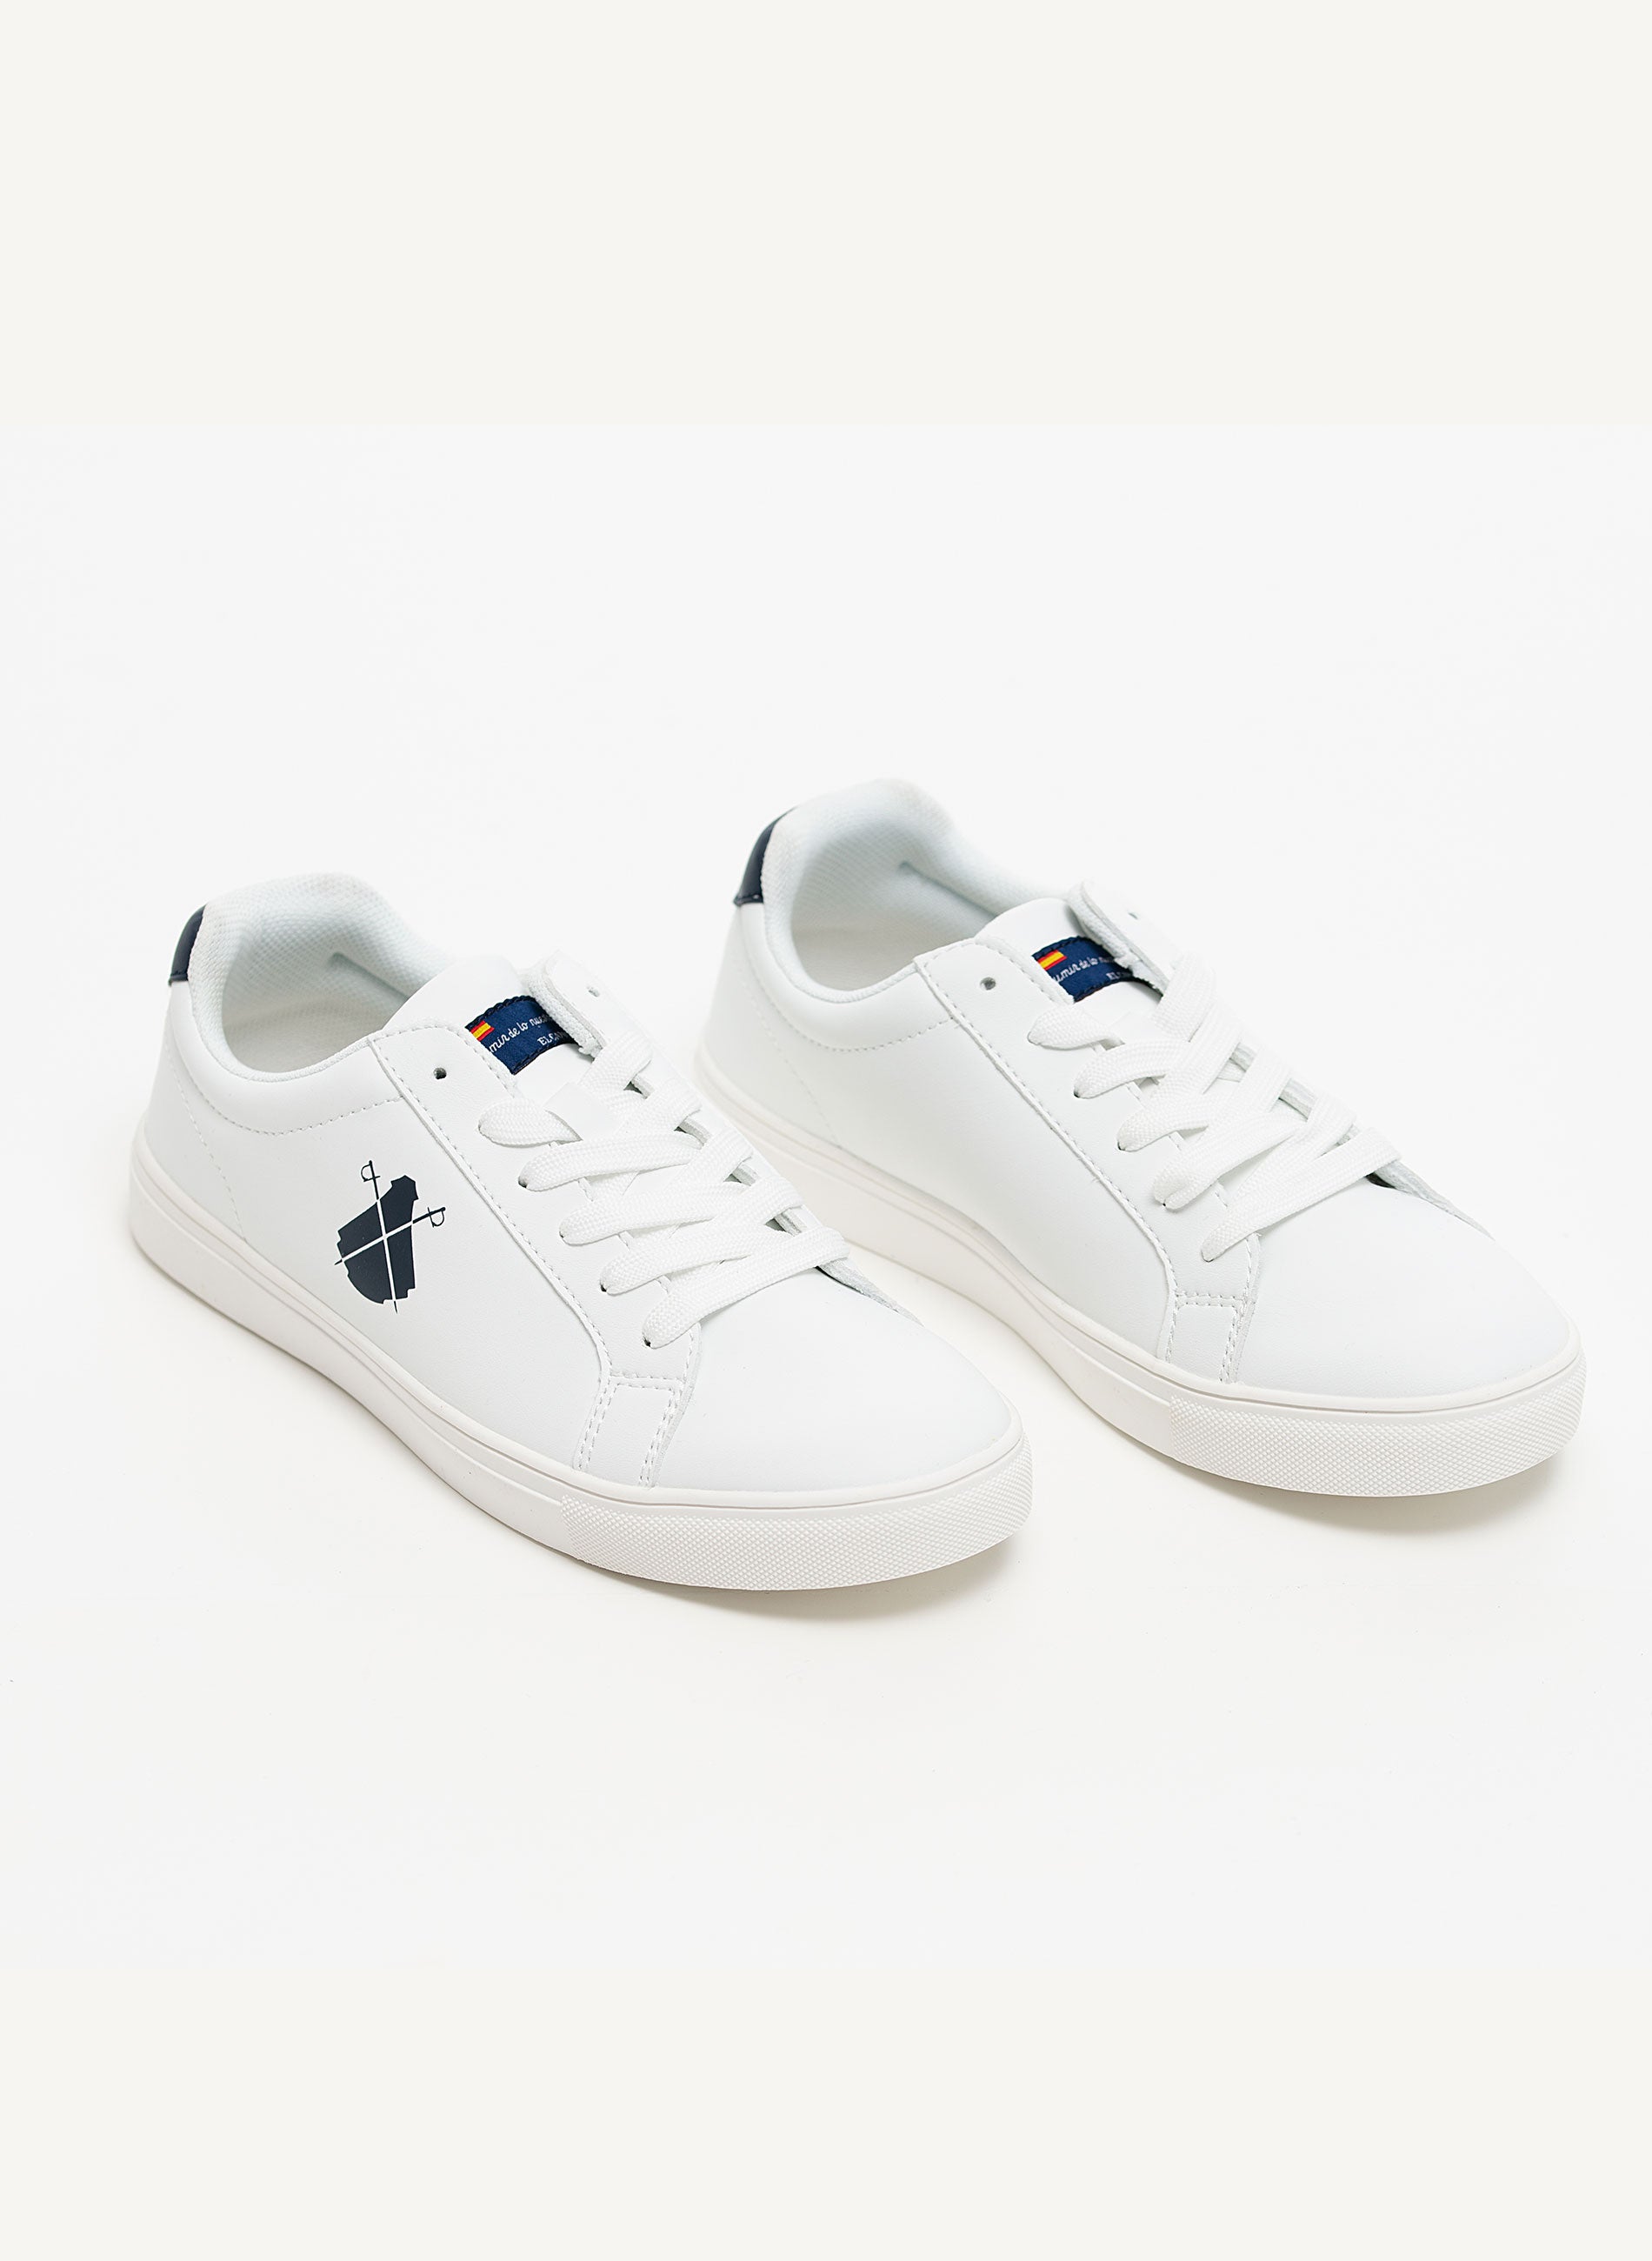 Marineblauwe witte sneakers met logo voor heren